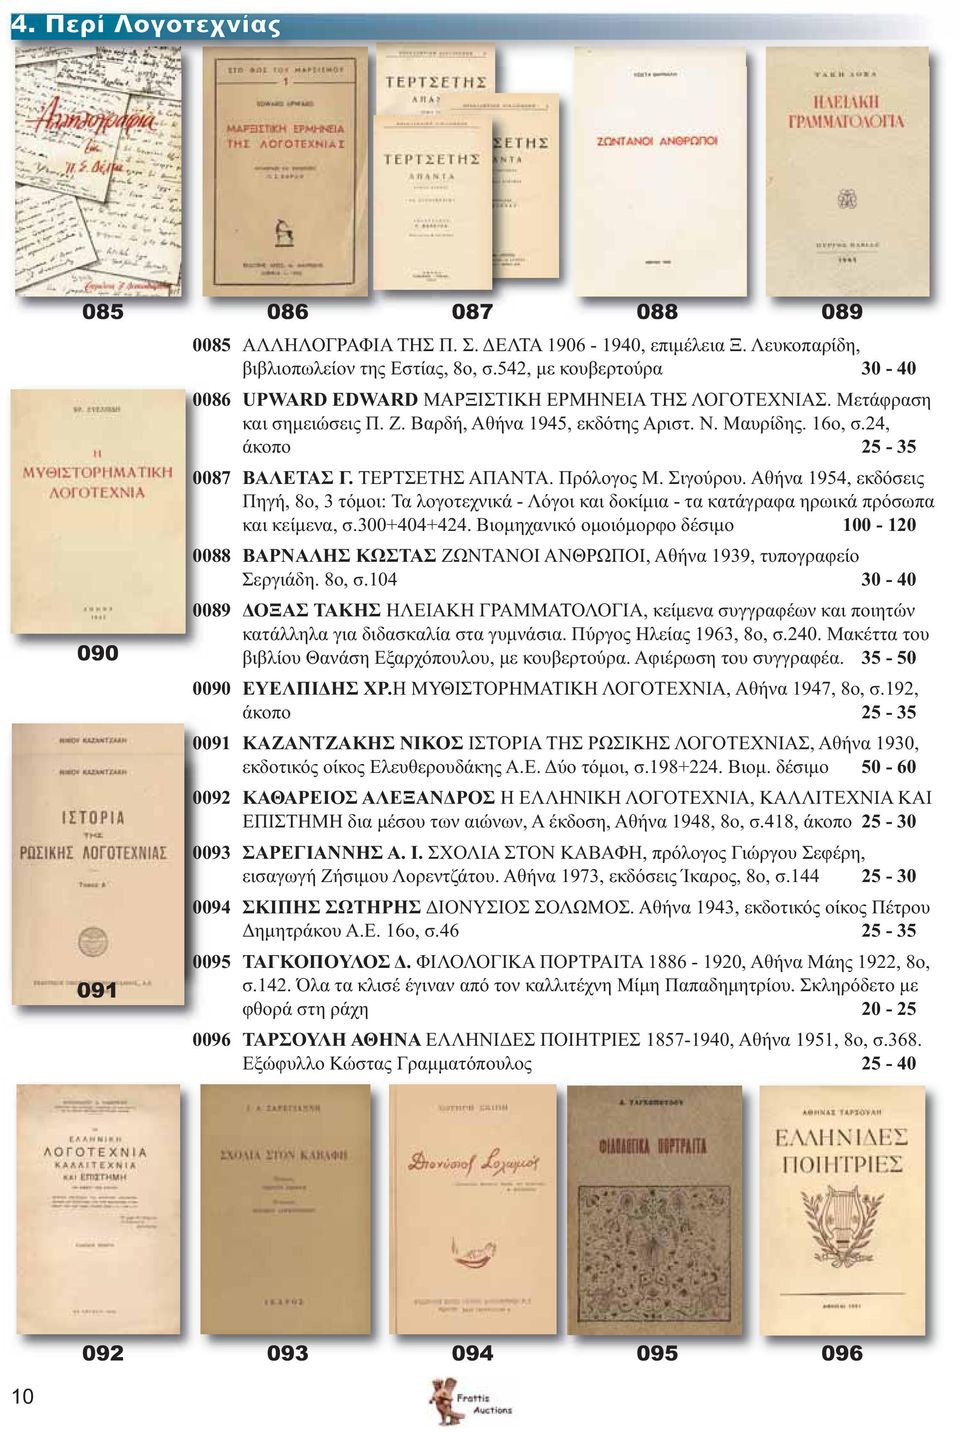 ΤΕΡΤΣΕΤΗΣ ΑΠΑΝΤΑ. Πρόλογος Μ. Σιγούρου. Αθήνα 1954, εκδόσεις Πηγή, 8ο, 3 τόμοι: Τα λογοτεχνικά - Λόγοι και δοκίμια - τα κατάγραφα ηρωικά πρόσωπα και κείμενα, σ.300+404+424.